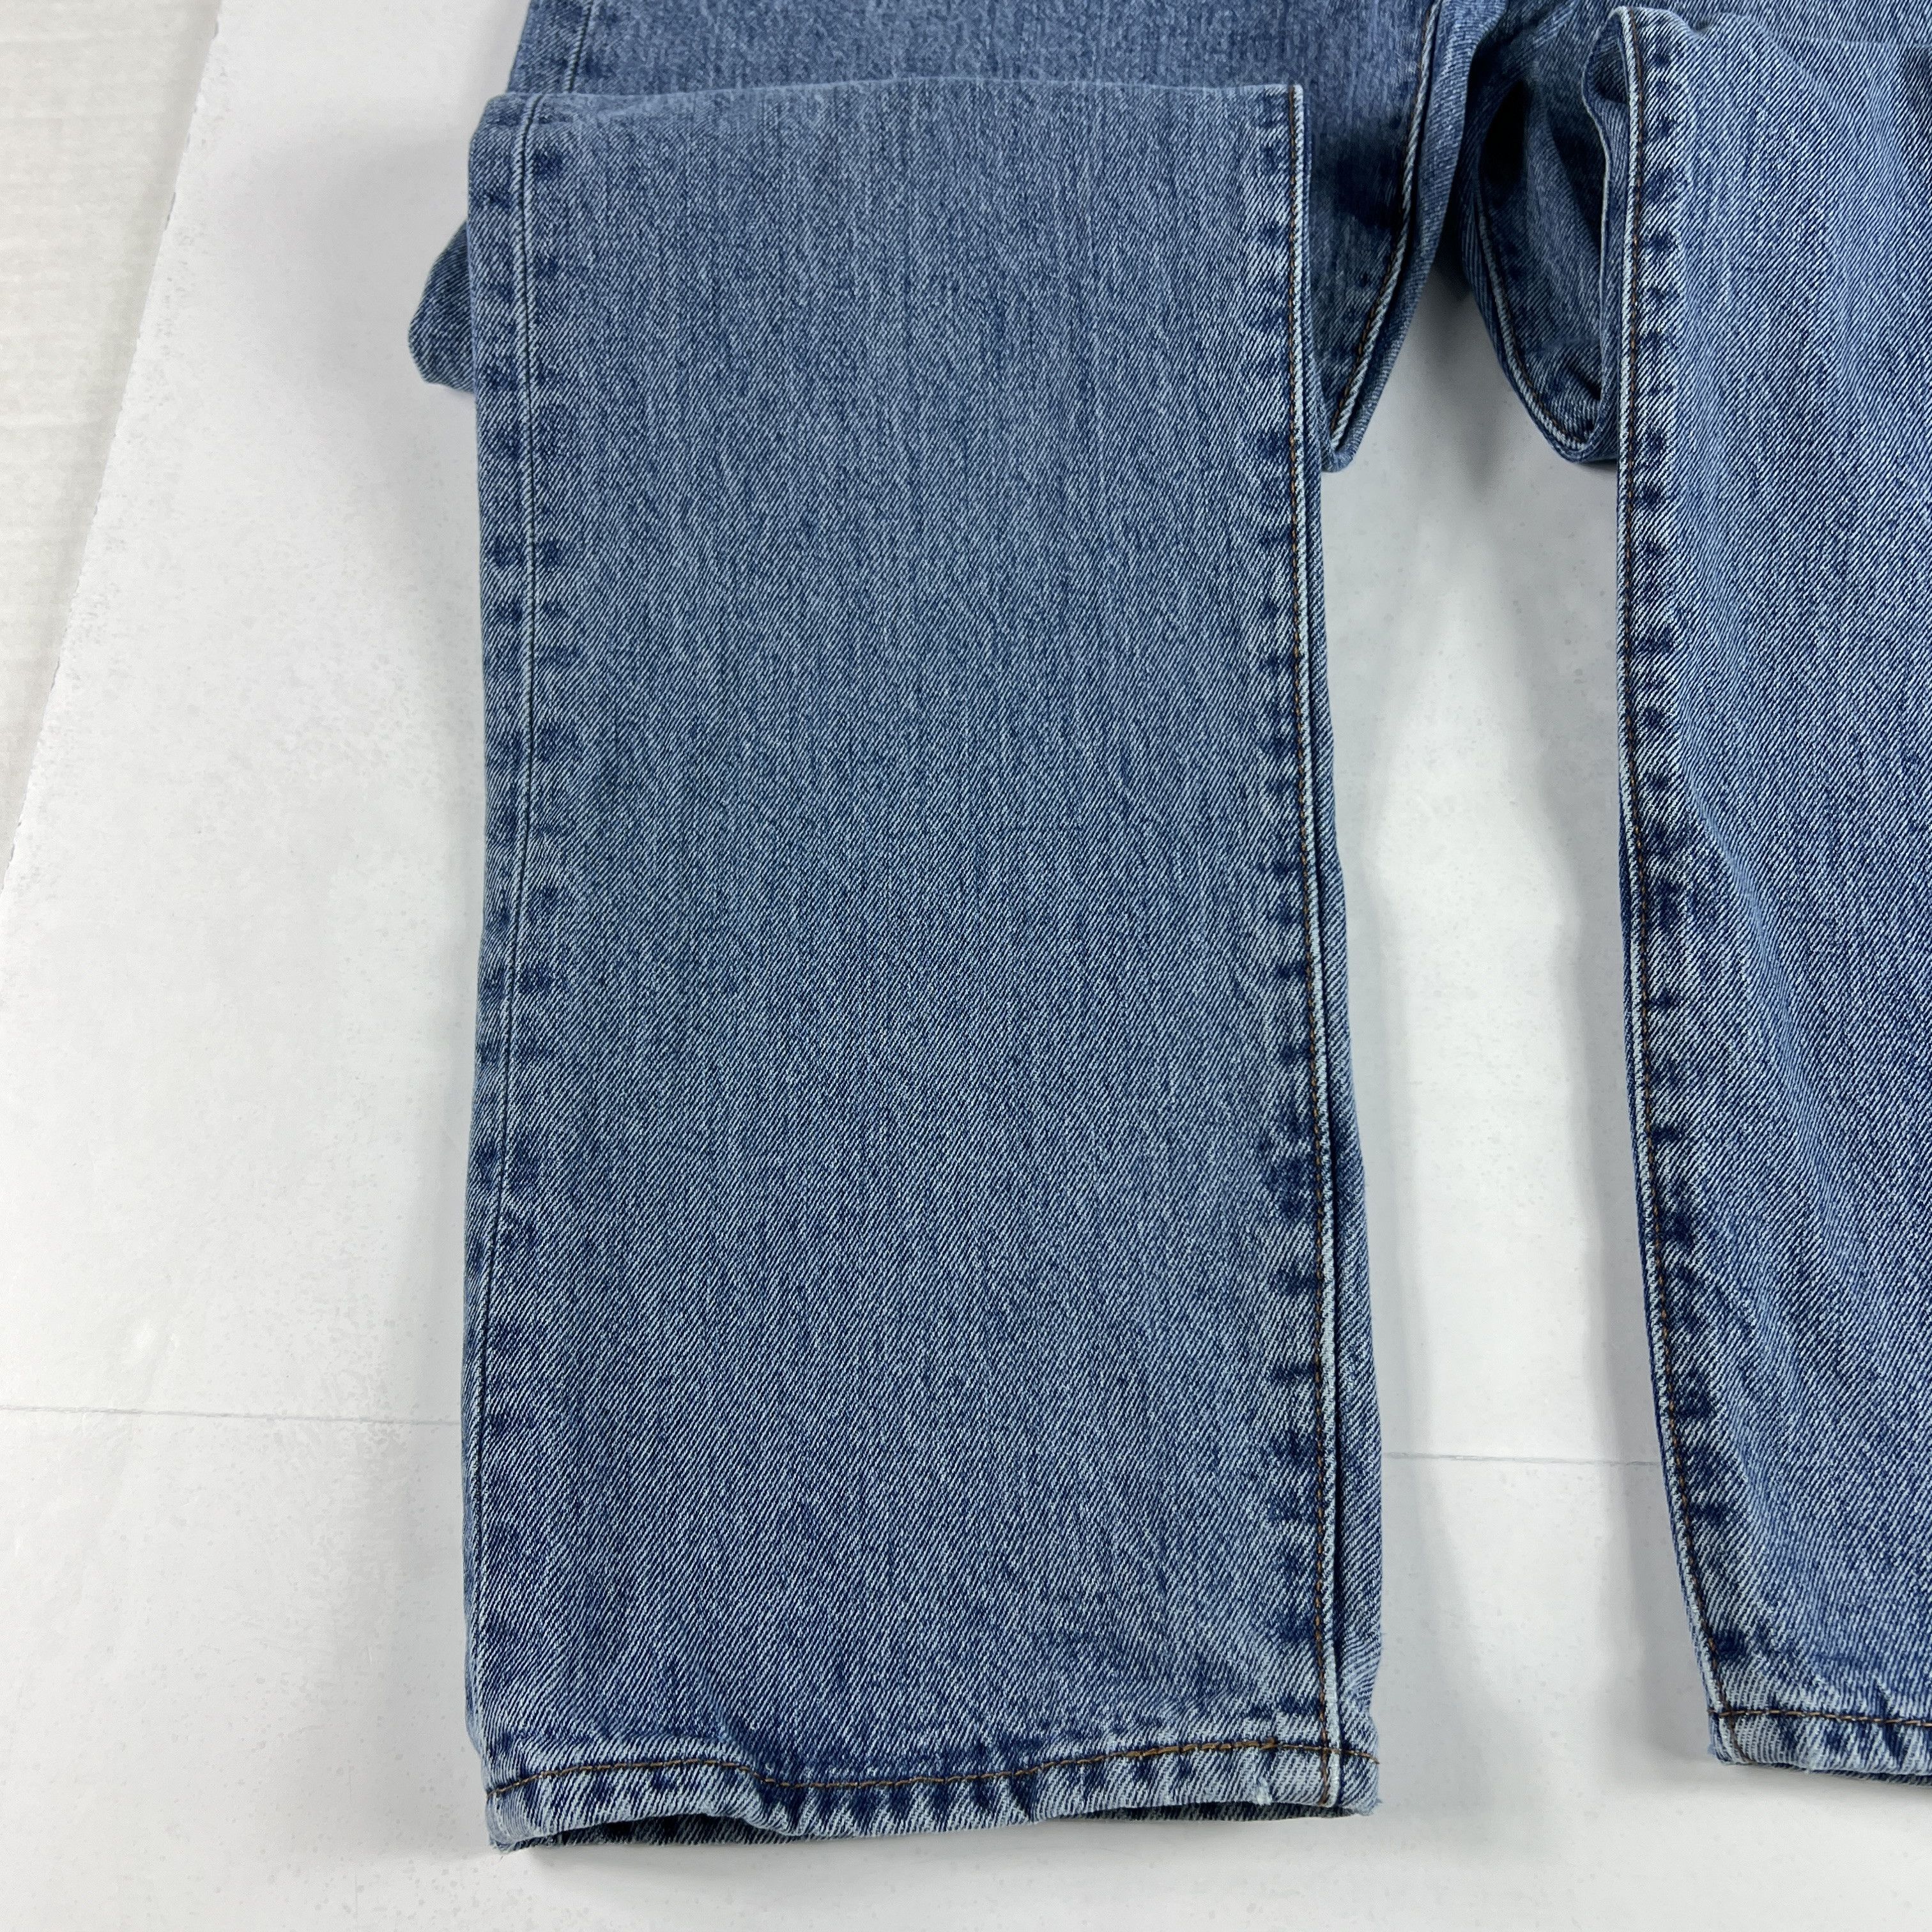 Levi's Levi's Jeans 501 XX Original Straight Blue Cotton Denim Size US 33 - 6 Thumbnail